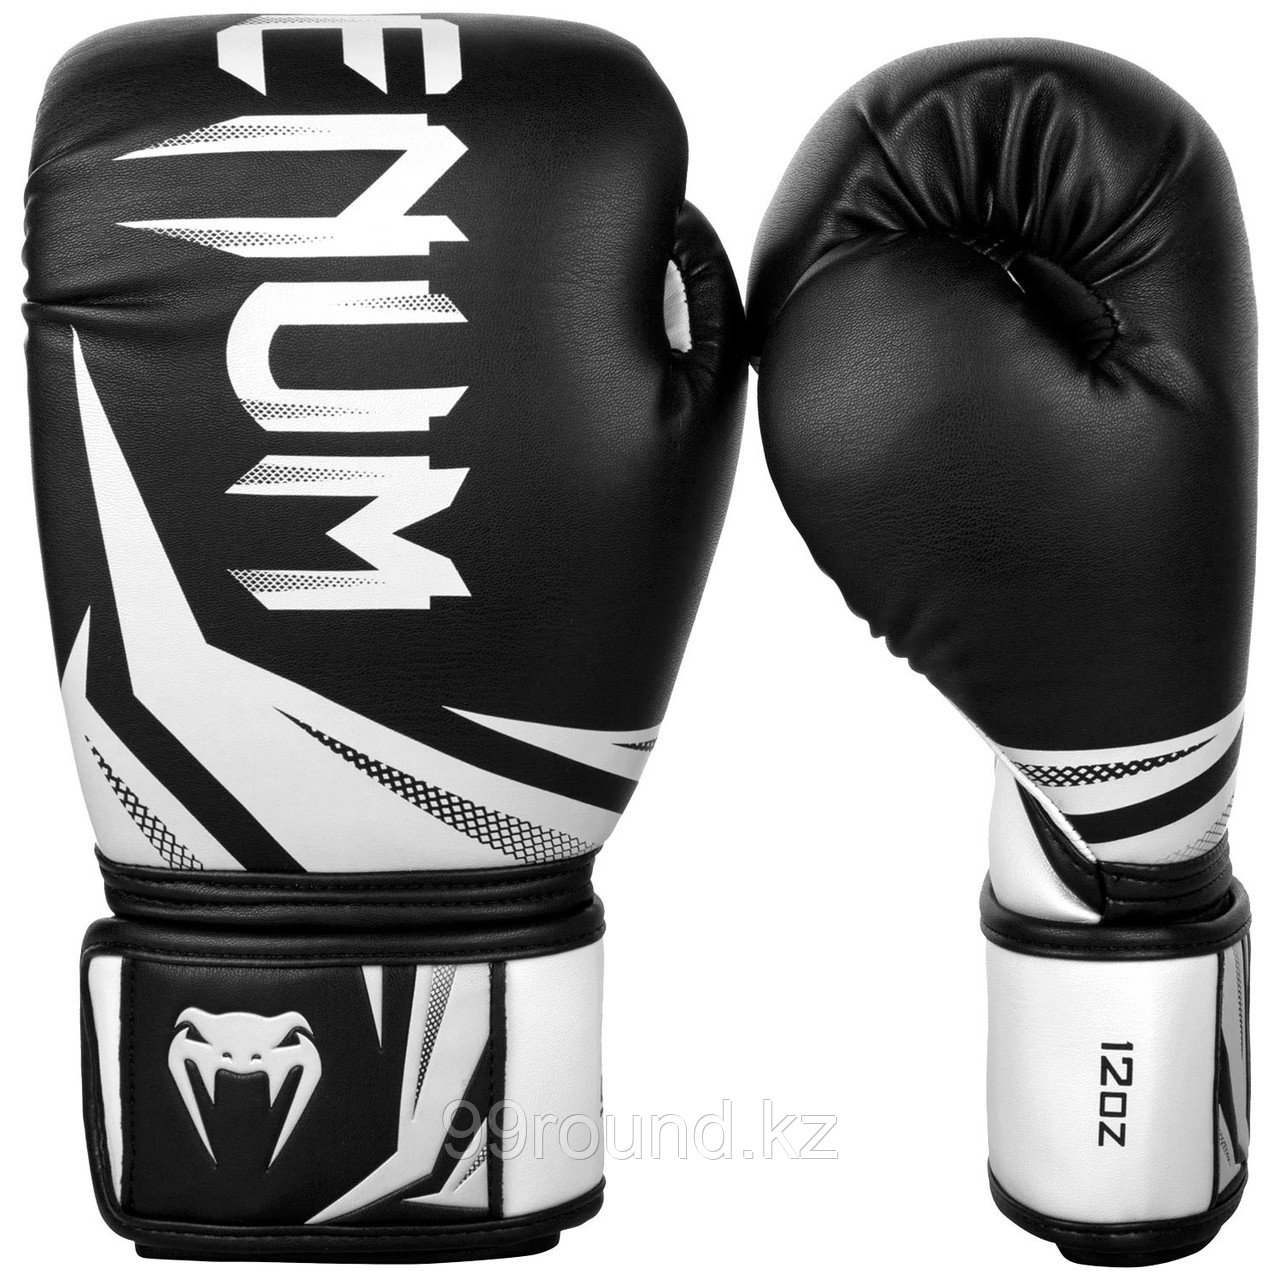 Перчатки для бокса Venum Challenger 3.0 Boxing Gloves-Black/White, фото 1